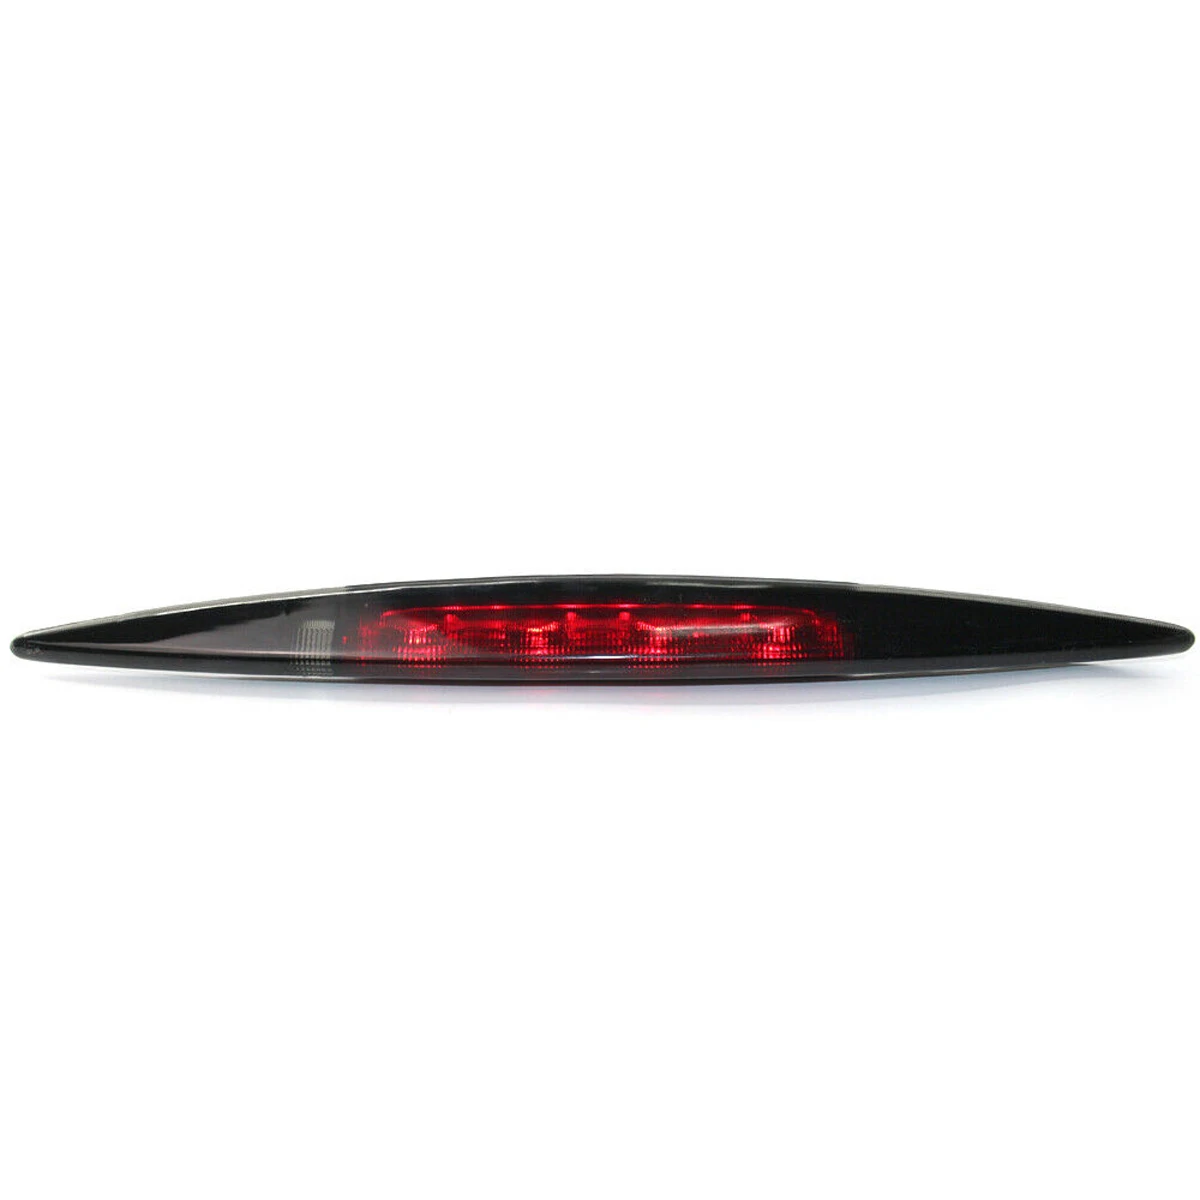 Белый/красный/дымовой трубы высокое крепление 3rd хвост светильник заднего стоп светильник стоп-сигнал для Хонда сrv для CR-V 2012 2013 - Цвет: Smoked Black